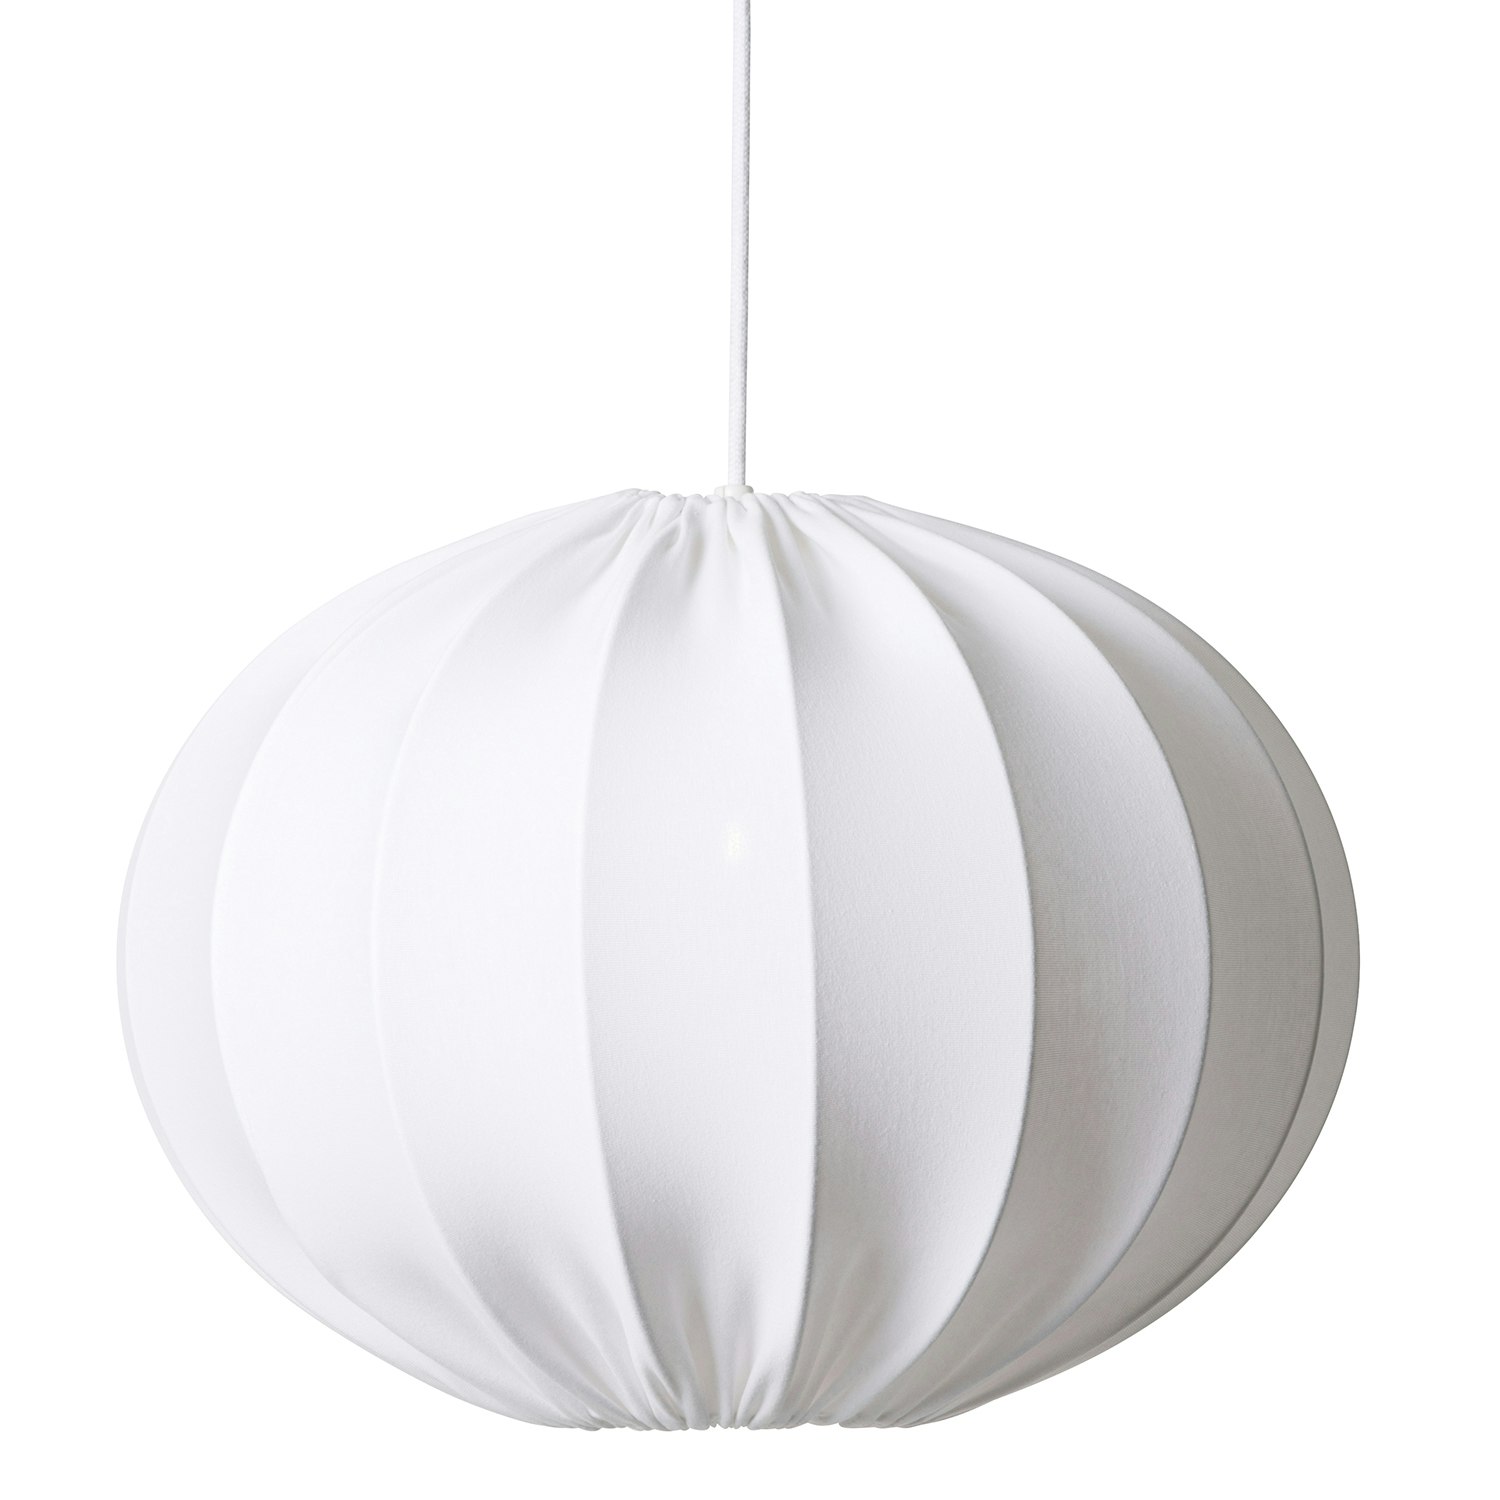 lampe skjerm - Søk - IKEA  Pendant lamp shade, Lamp shade, Pendant lamp